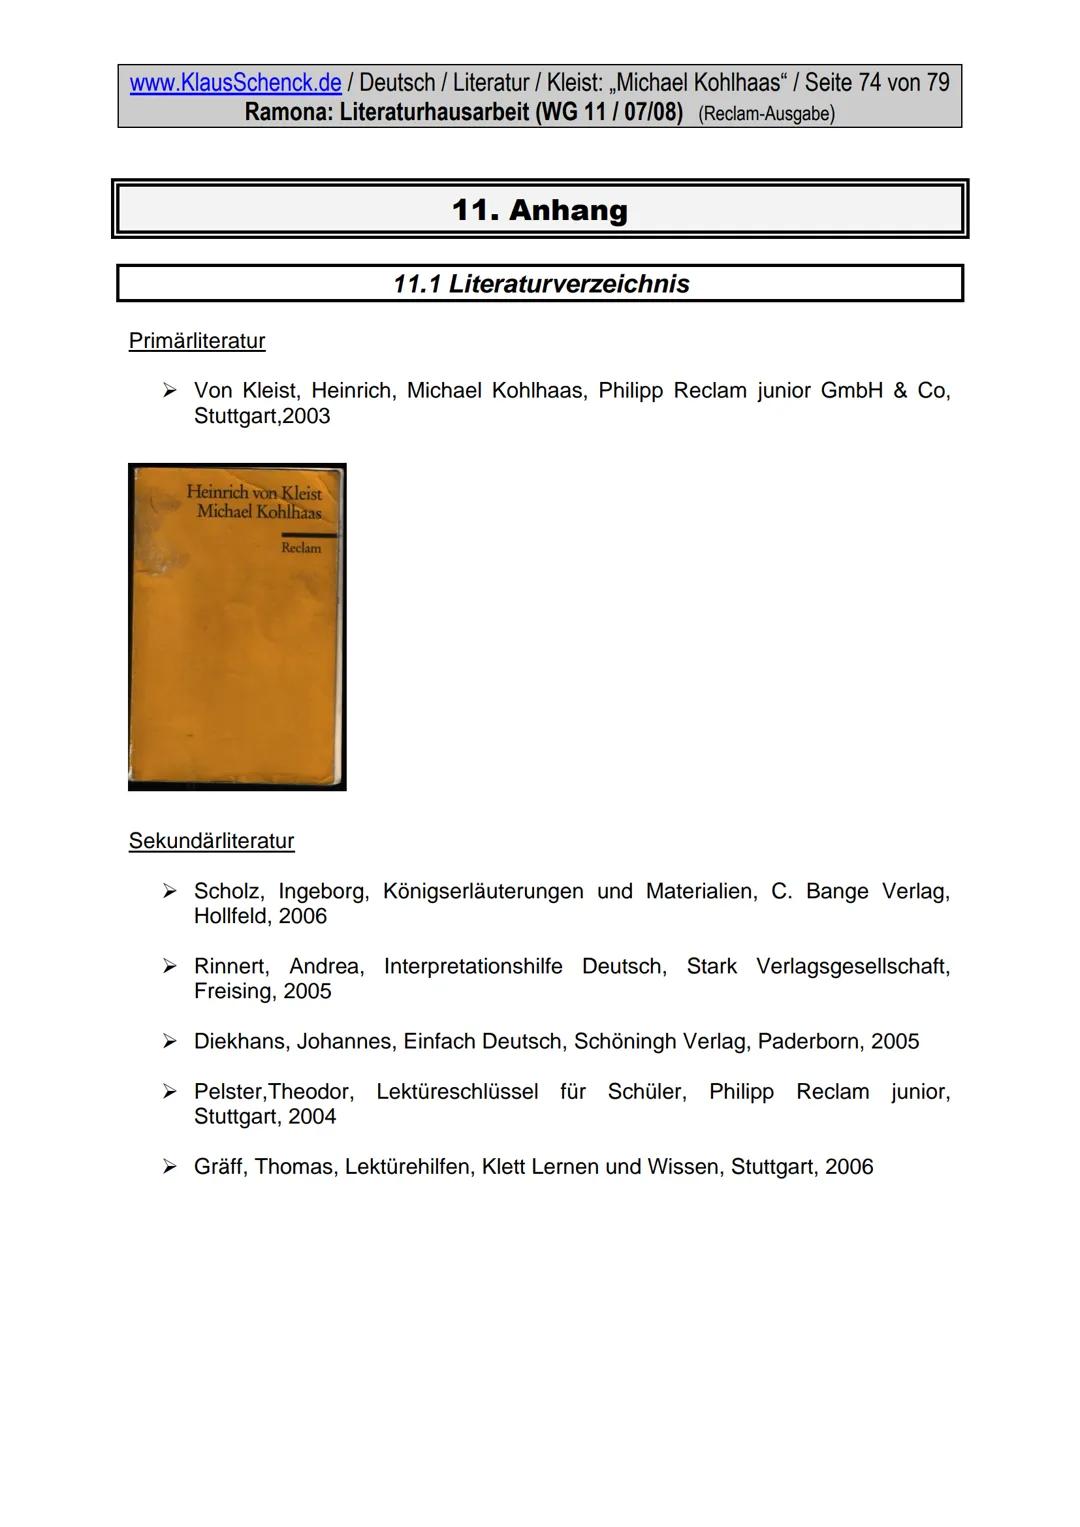 www.KlausSchenck.de / Deutsch / WG 11/ Literaturhausarbeit (2013/14) / S. 1 von 20
Strategische Vorschläge für eine Literaturhausarbeit / An